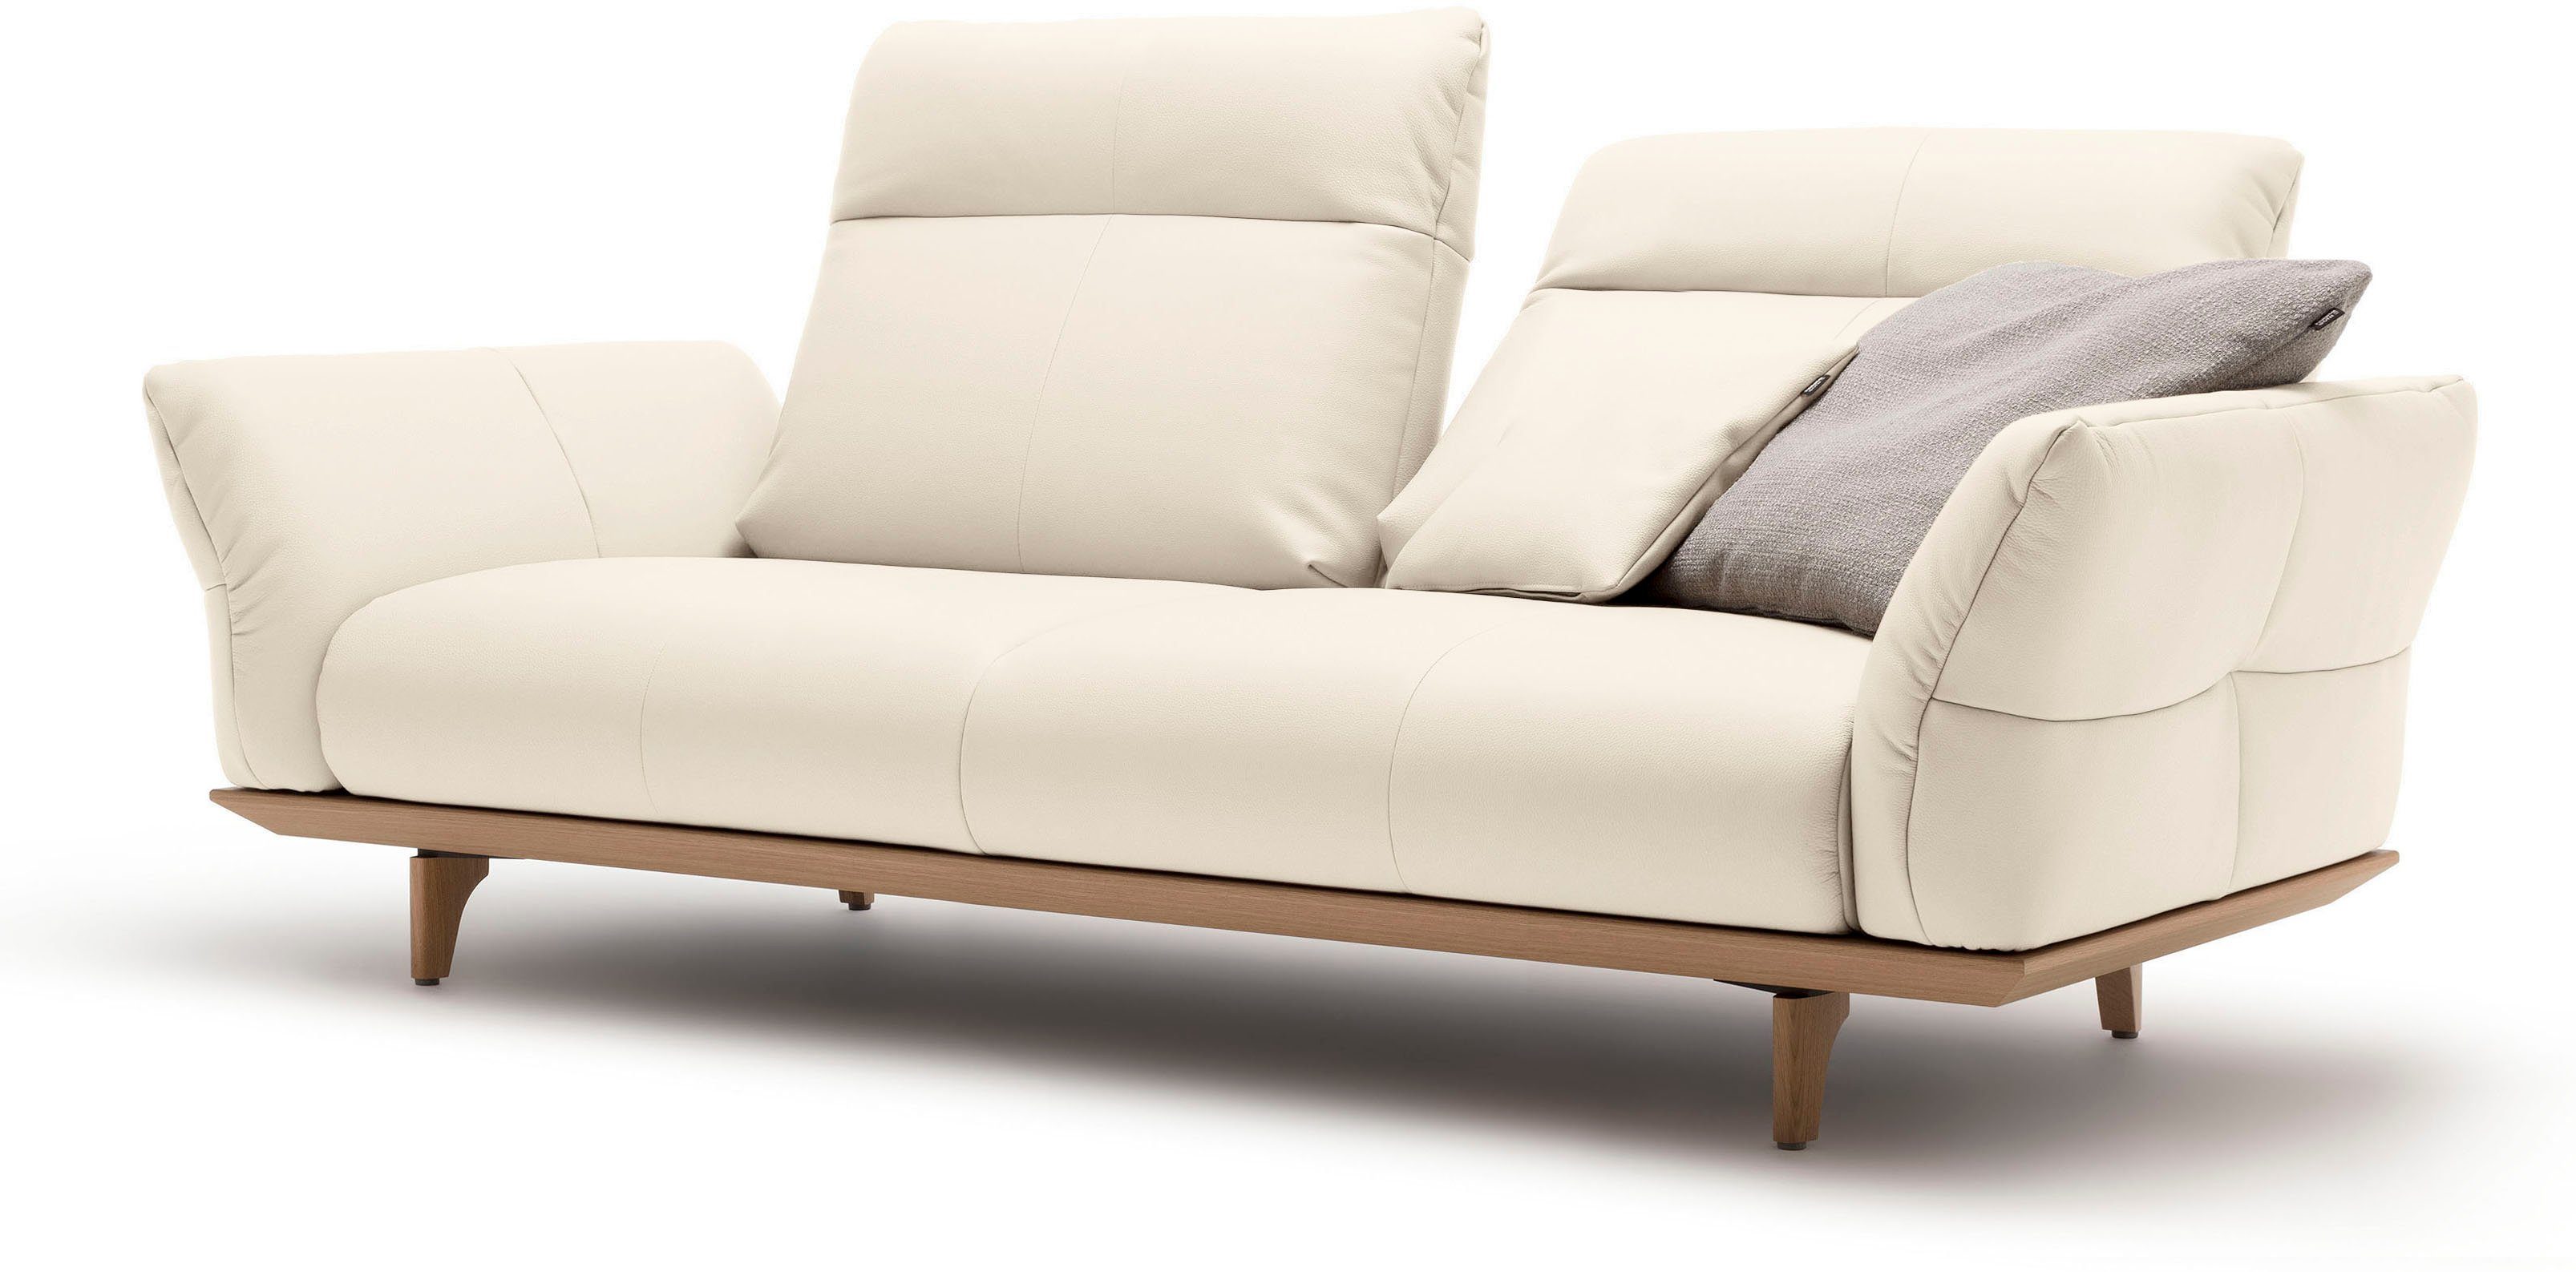 Eiche natur, sofa in Breite Füße hs.460, Sockel Eiche, 3-Sitzer cm hülsta 208